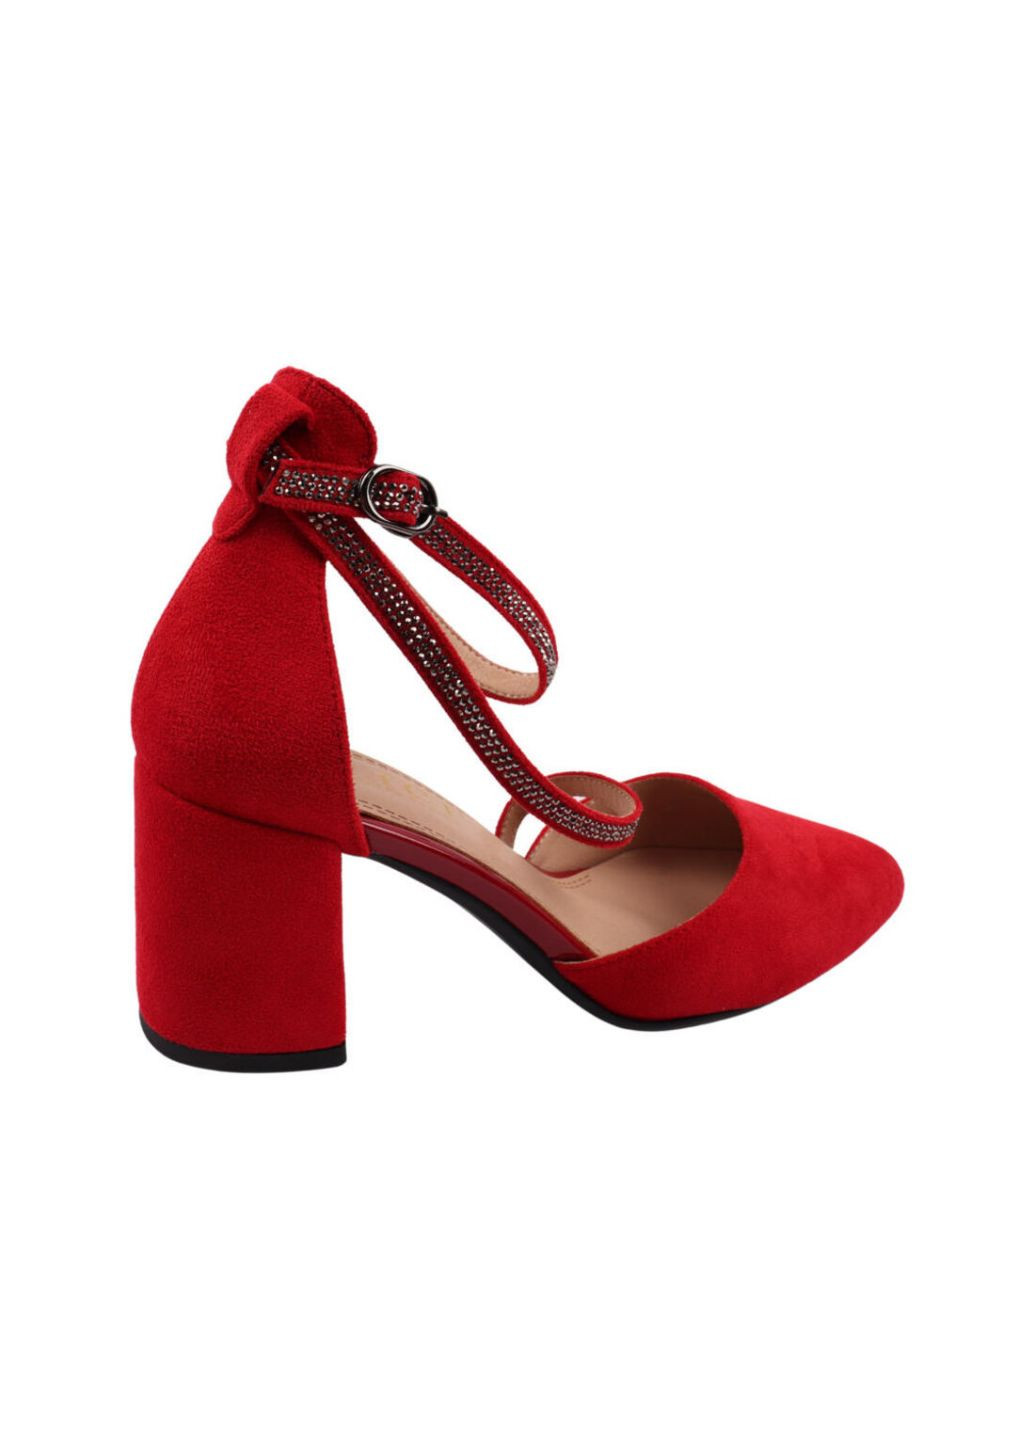 Туфли женские красные LIICI